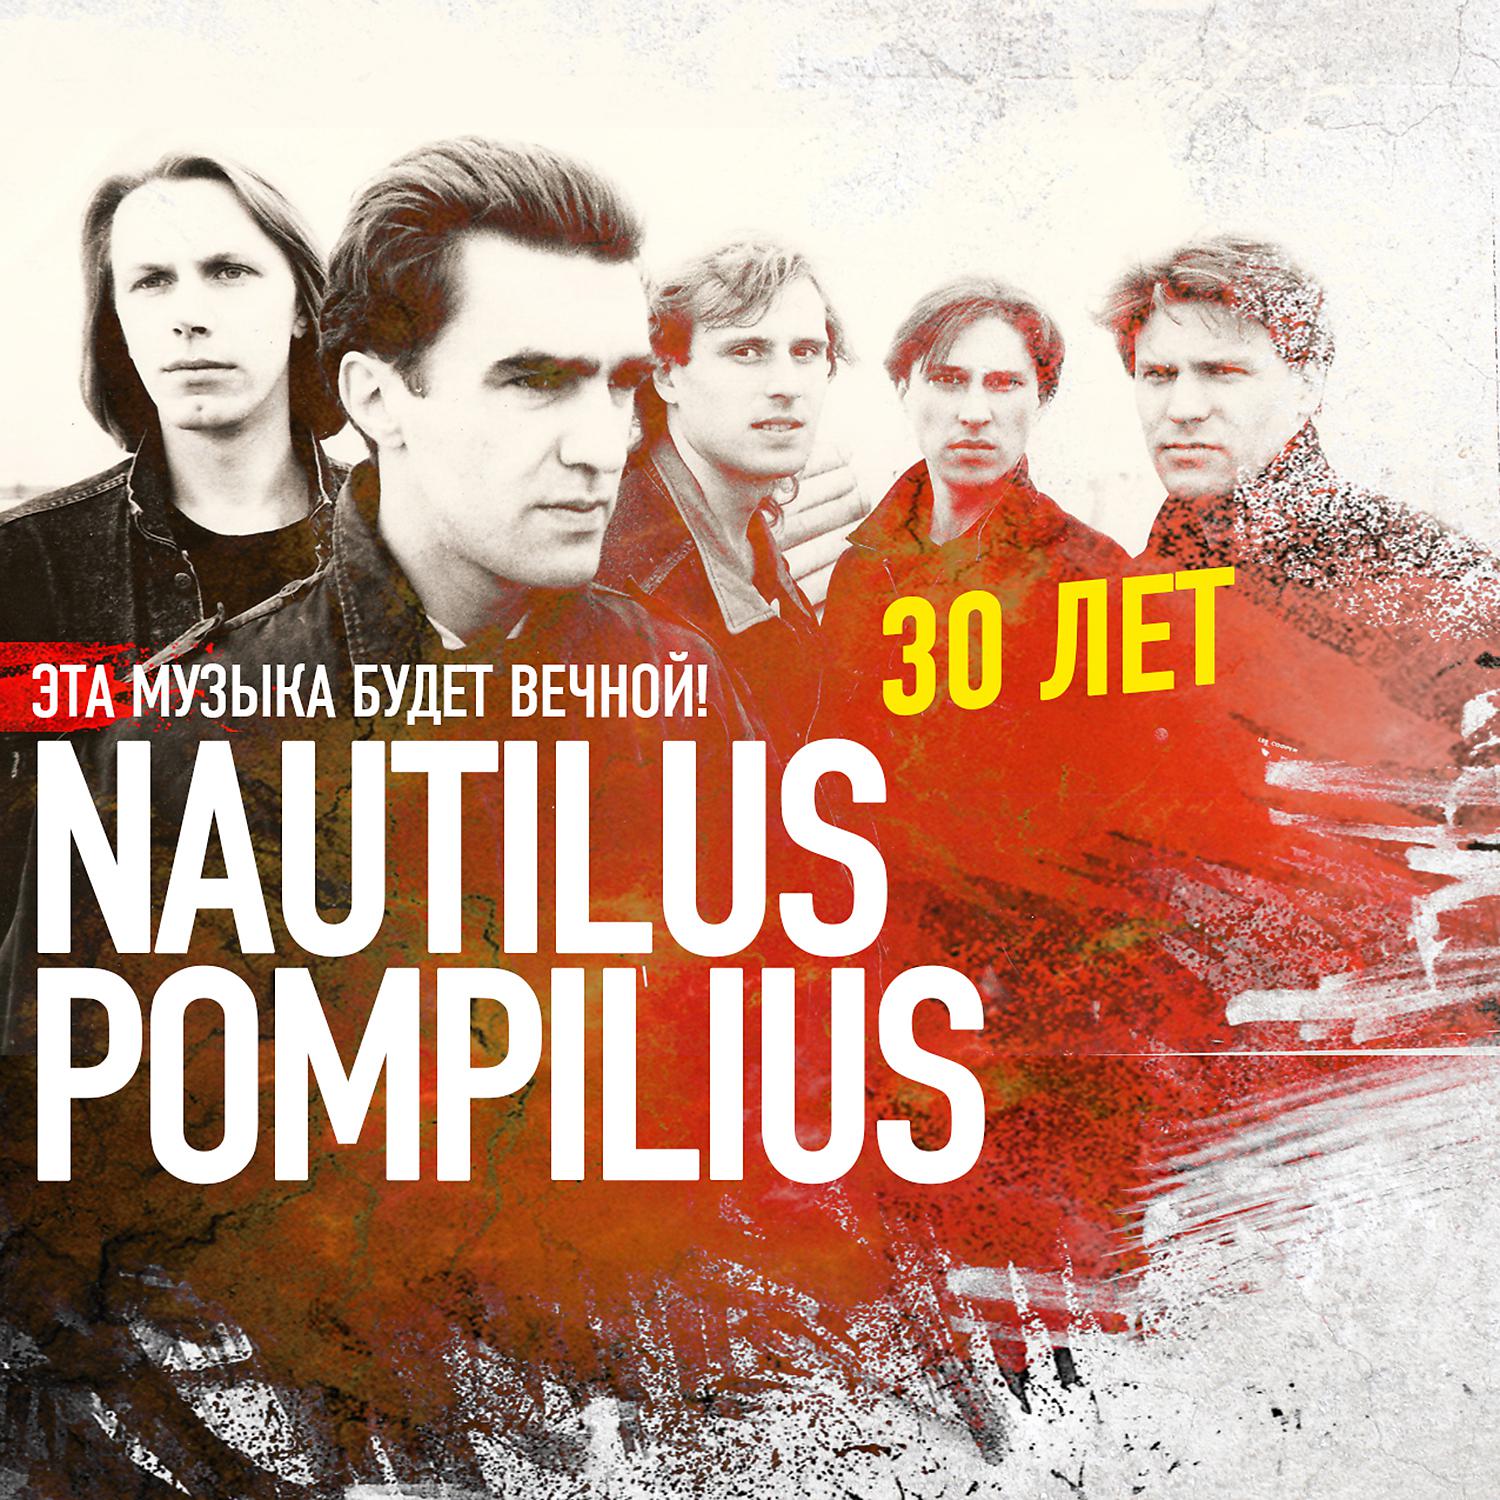 Группа наутилус слушать лучшие. Наутилус Помпилиус. Наутилус группа. Наутилус 1992. Группа Nautilus Pompilius плакат.